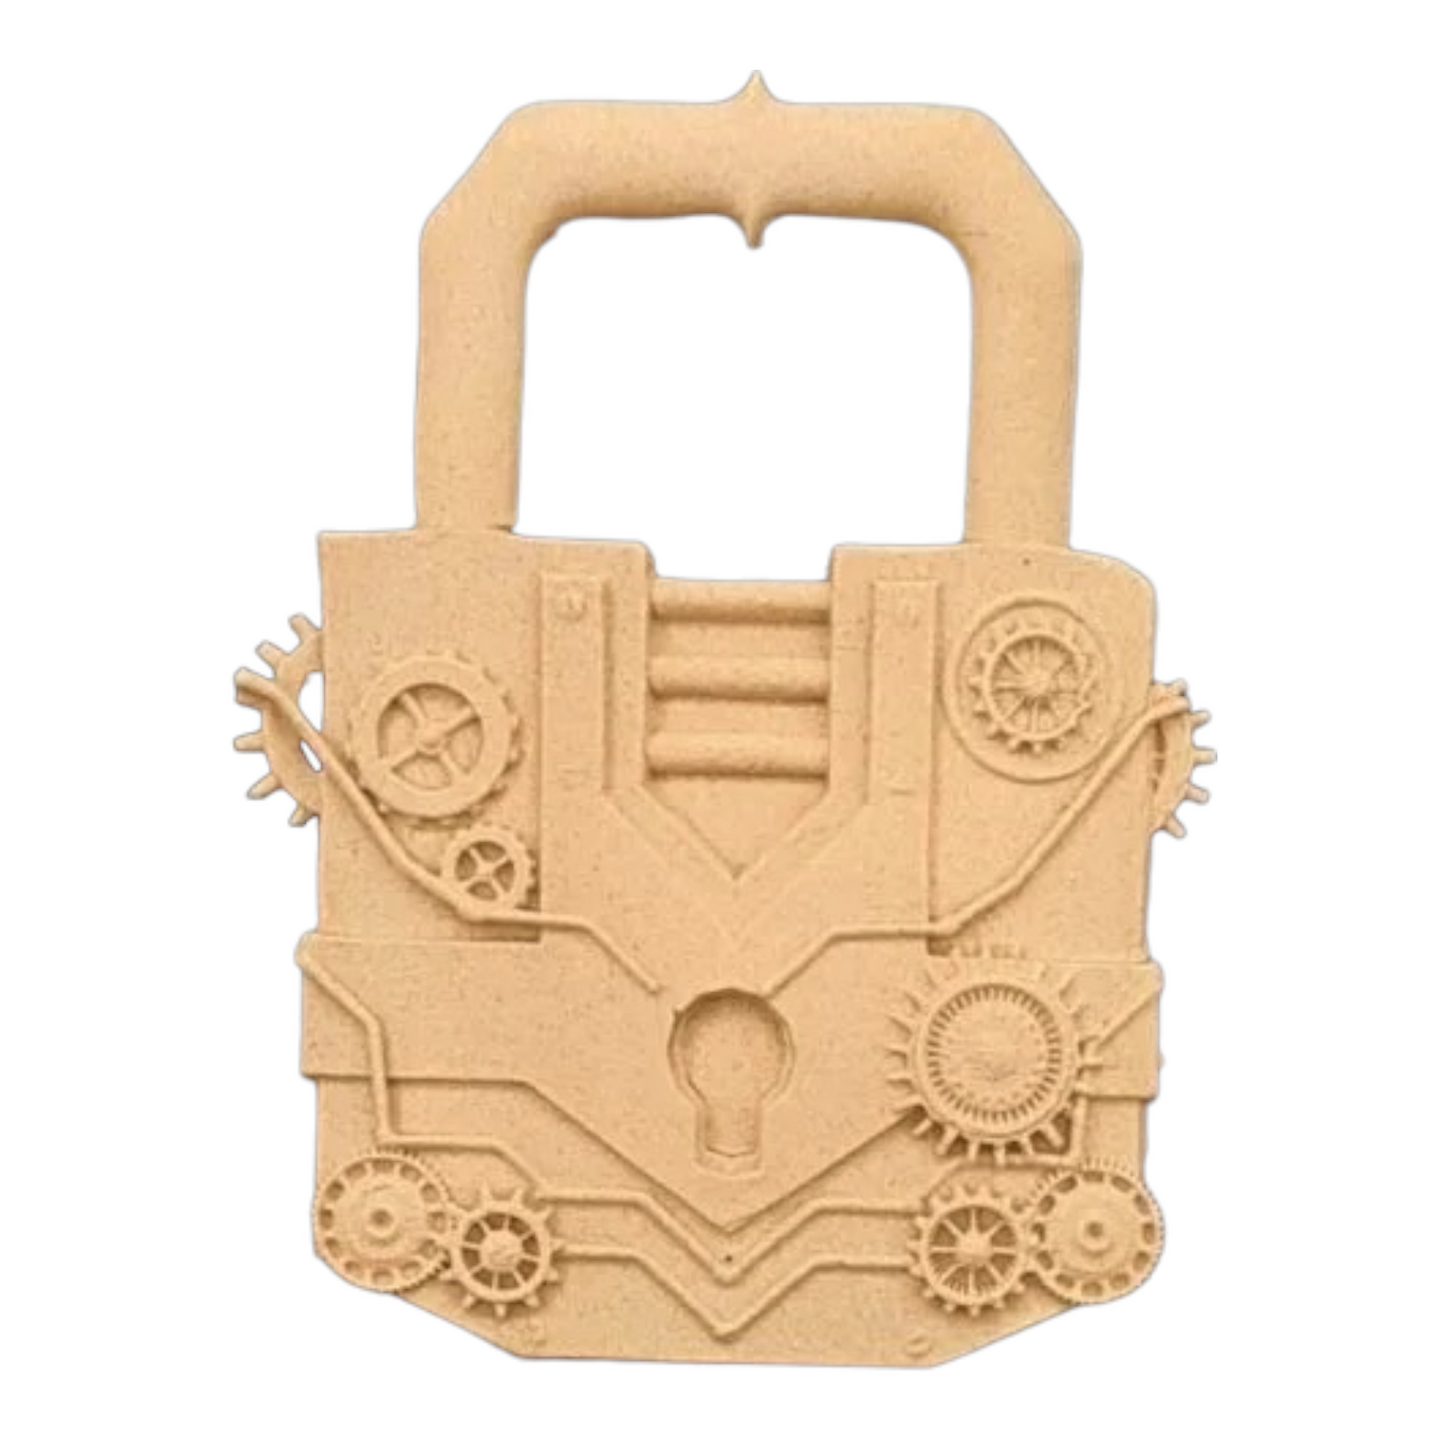 IFW 3609 Pad lock, steampunk